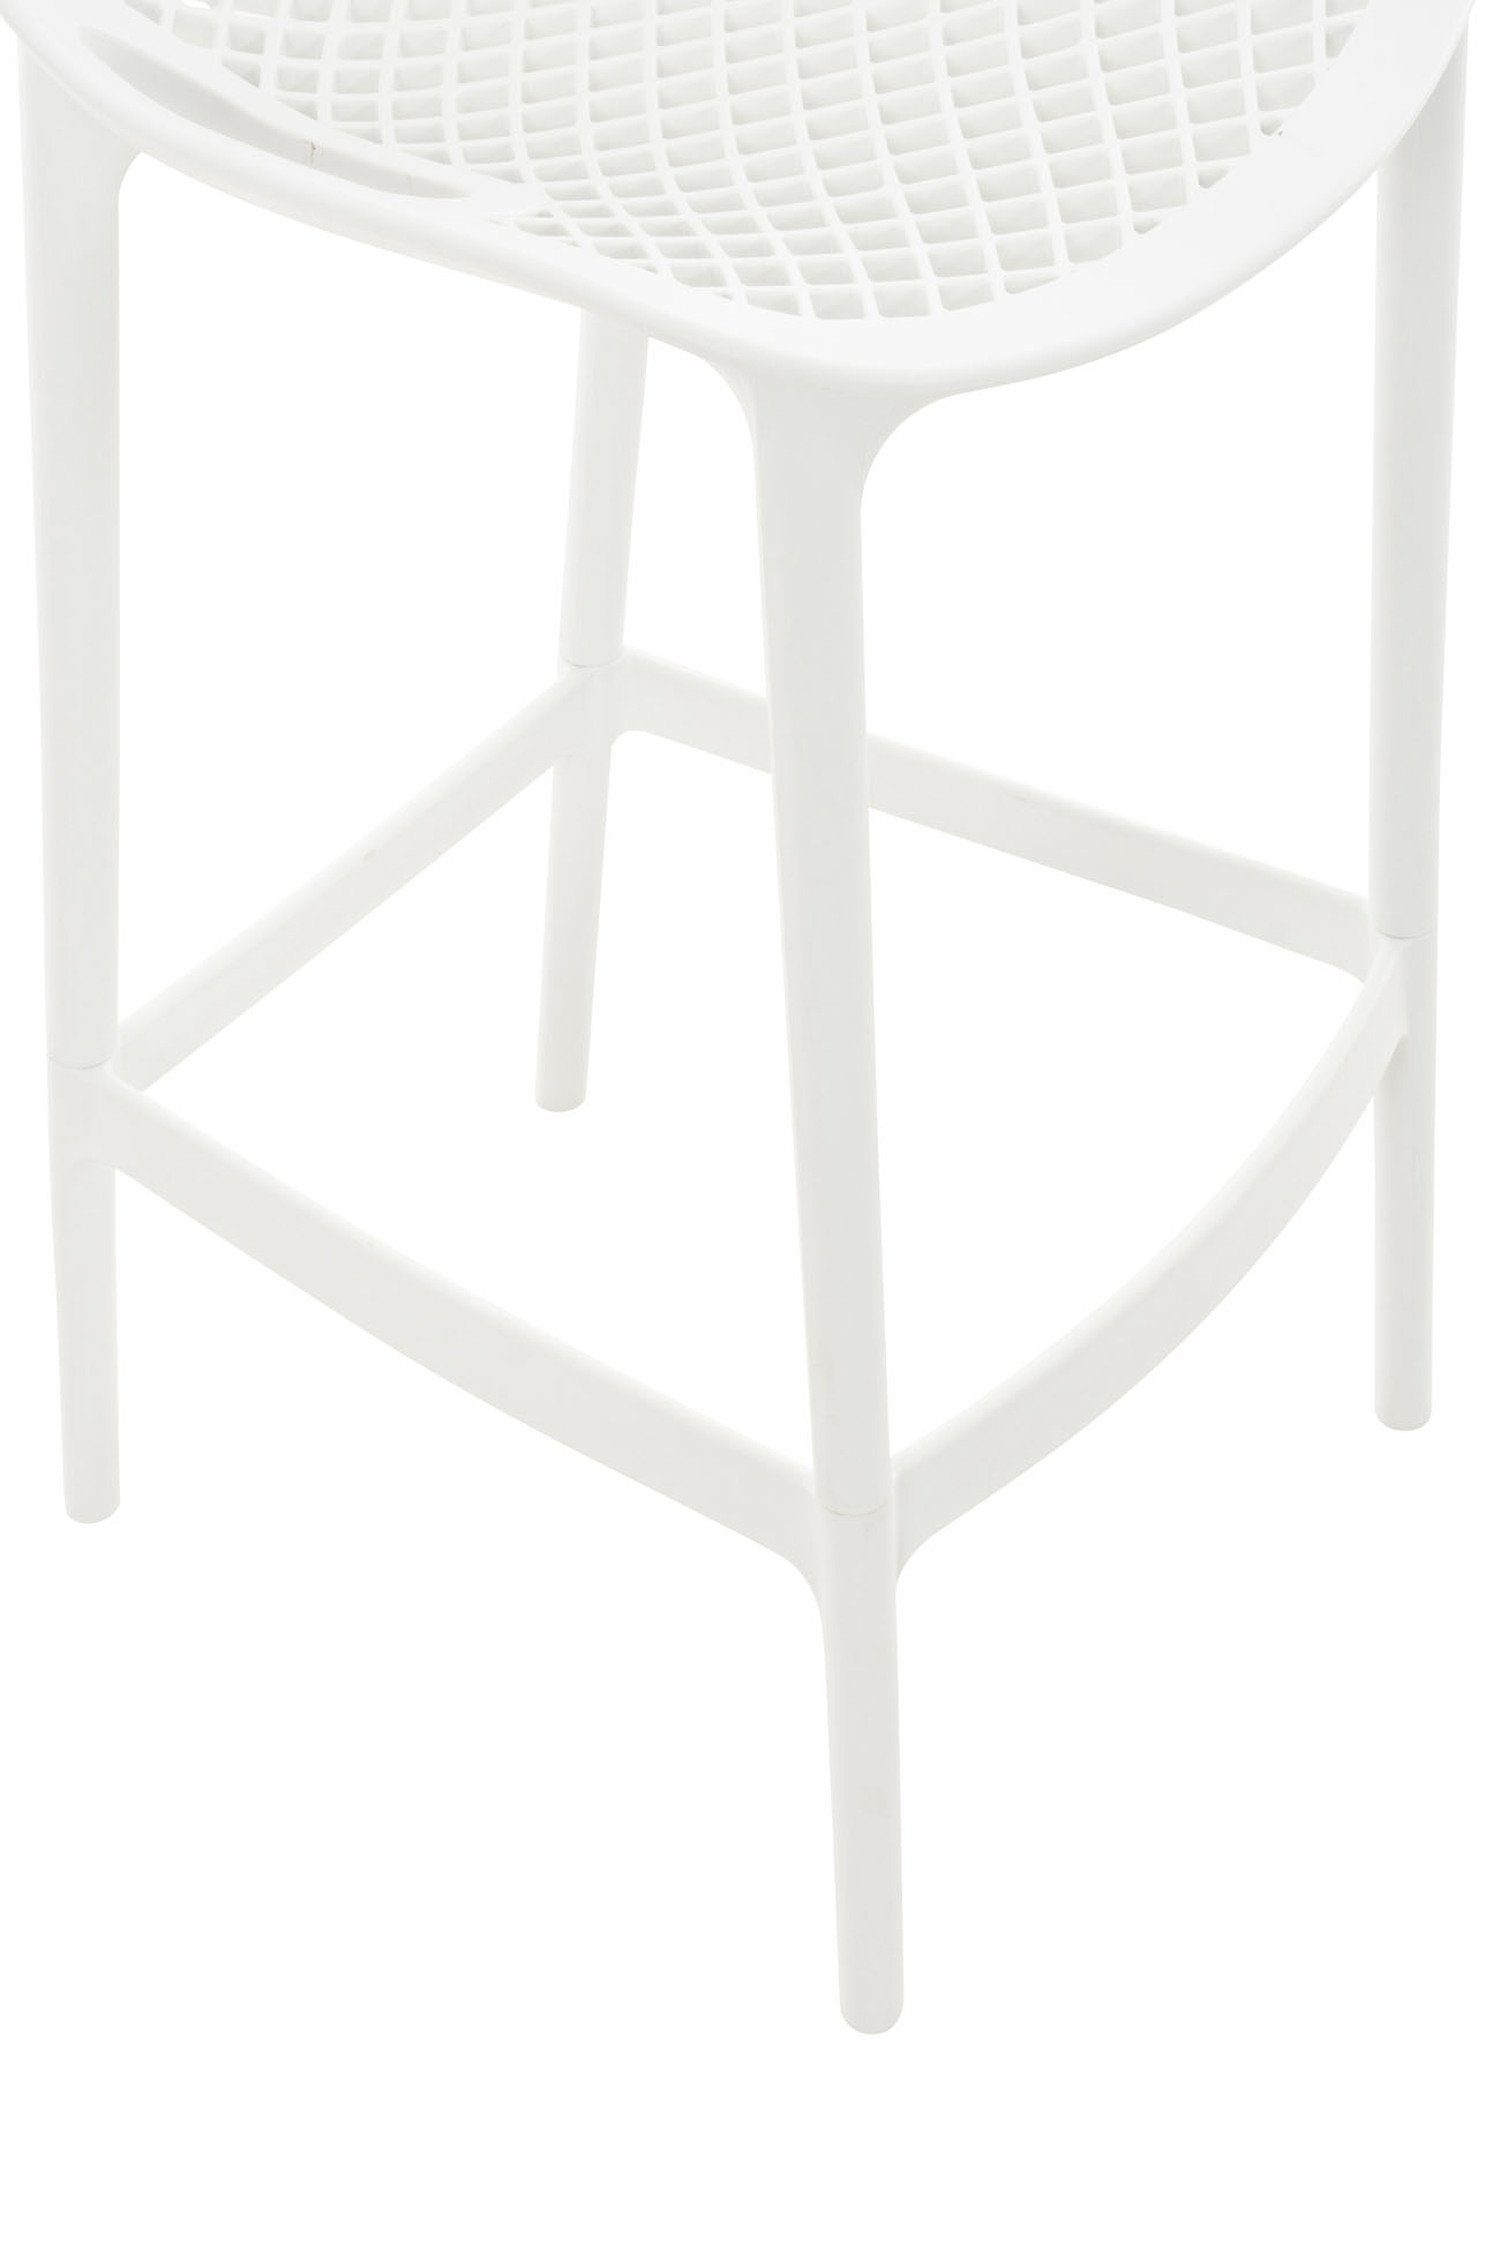 angenehmer Fußstütze Air Kunststoff Barhocker Sitzfläche: für Kunststoff Gestell (mit Hocker Küche), - - TPFLiving Weiß & Theke